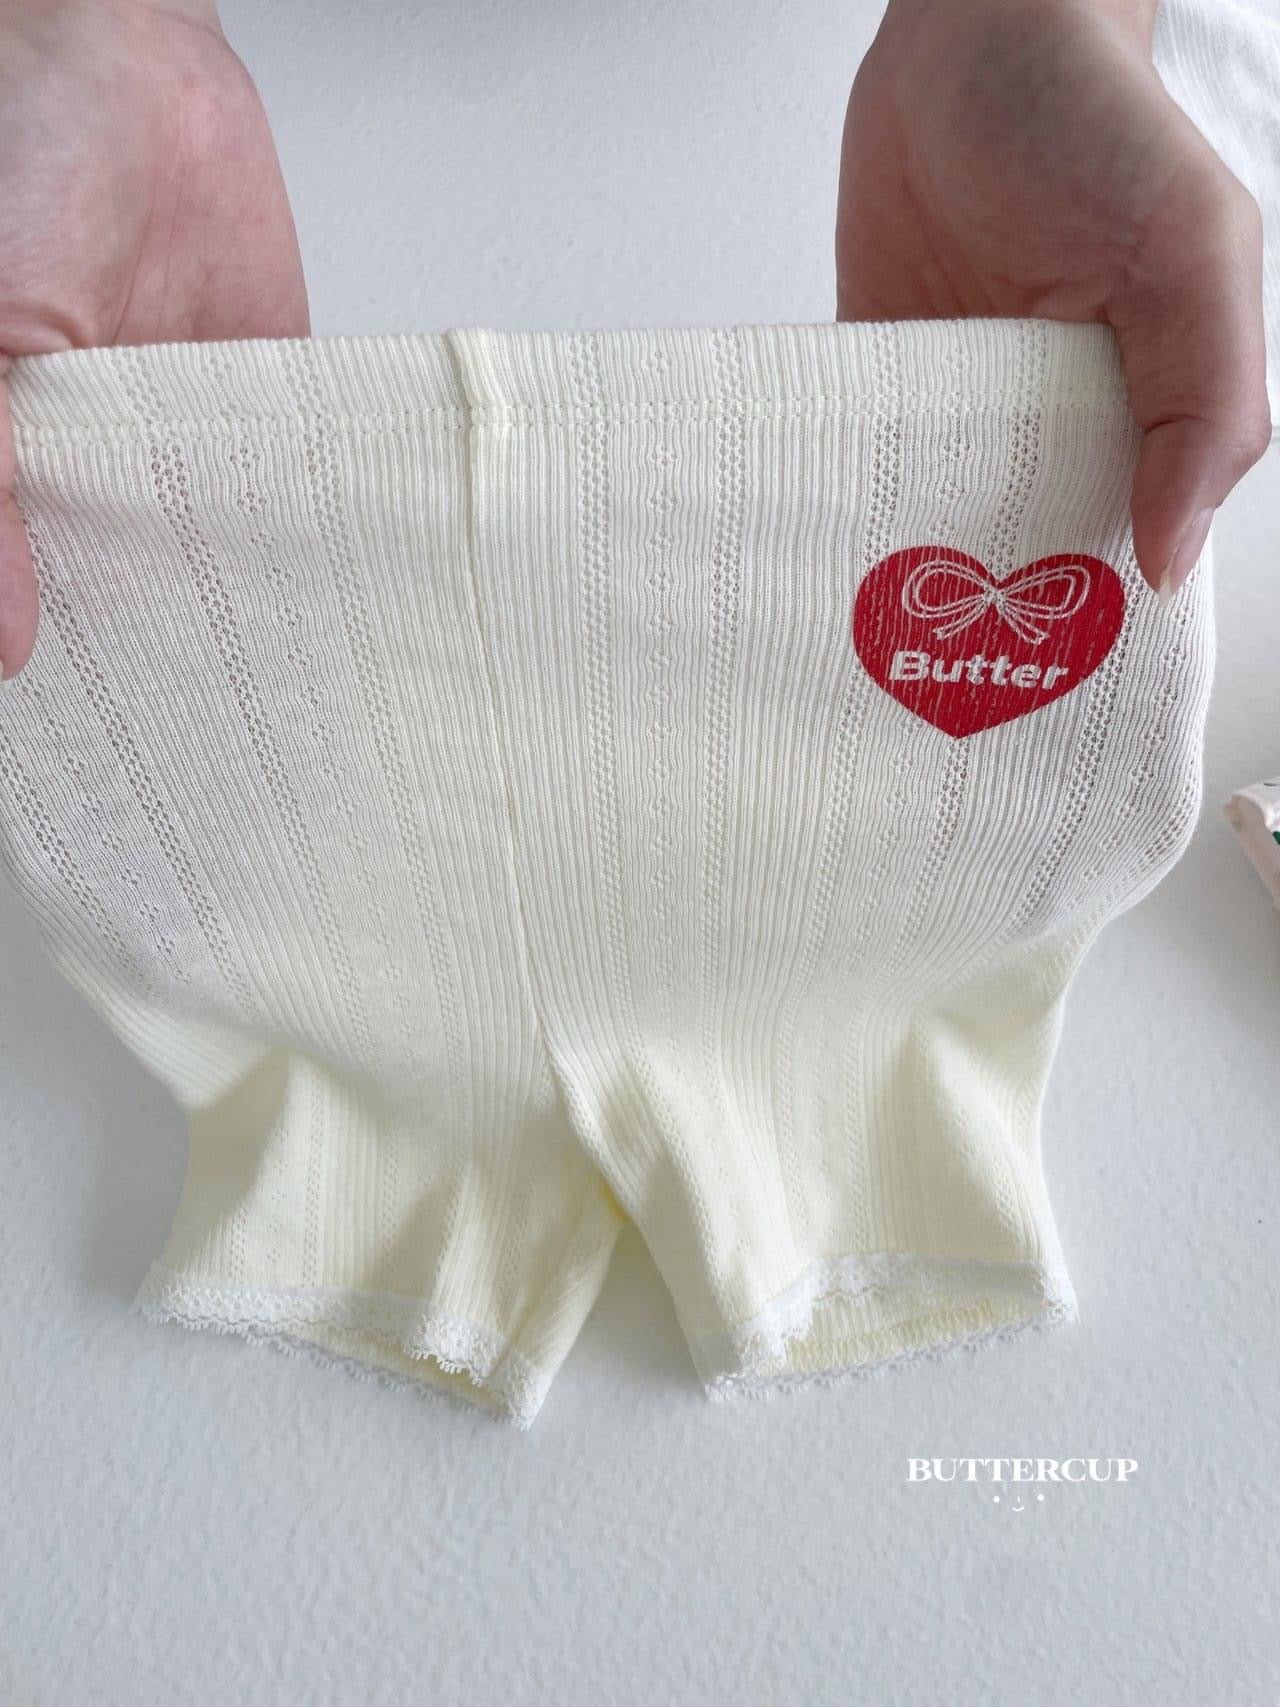 Buttercup 愛心標蕾絲內搭褲 (kids 80-120cm)